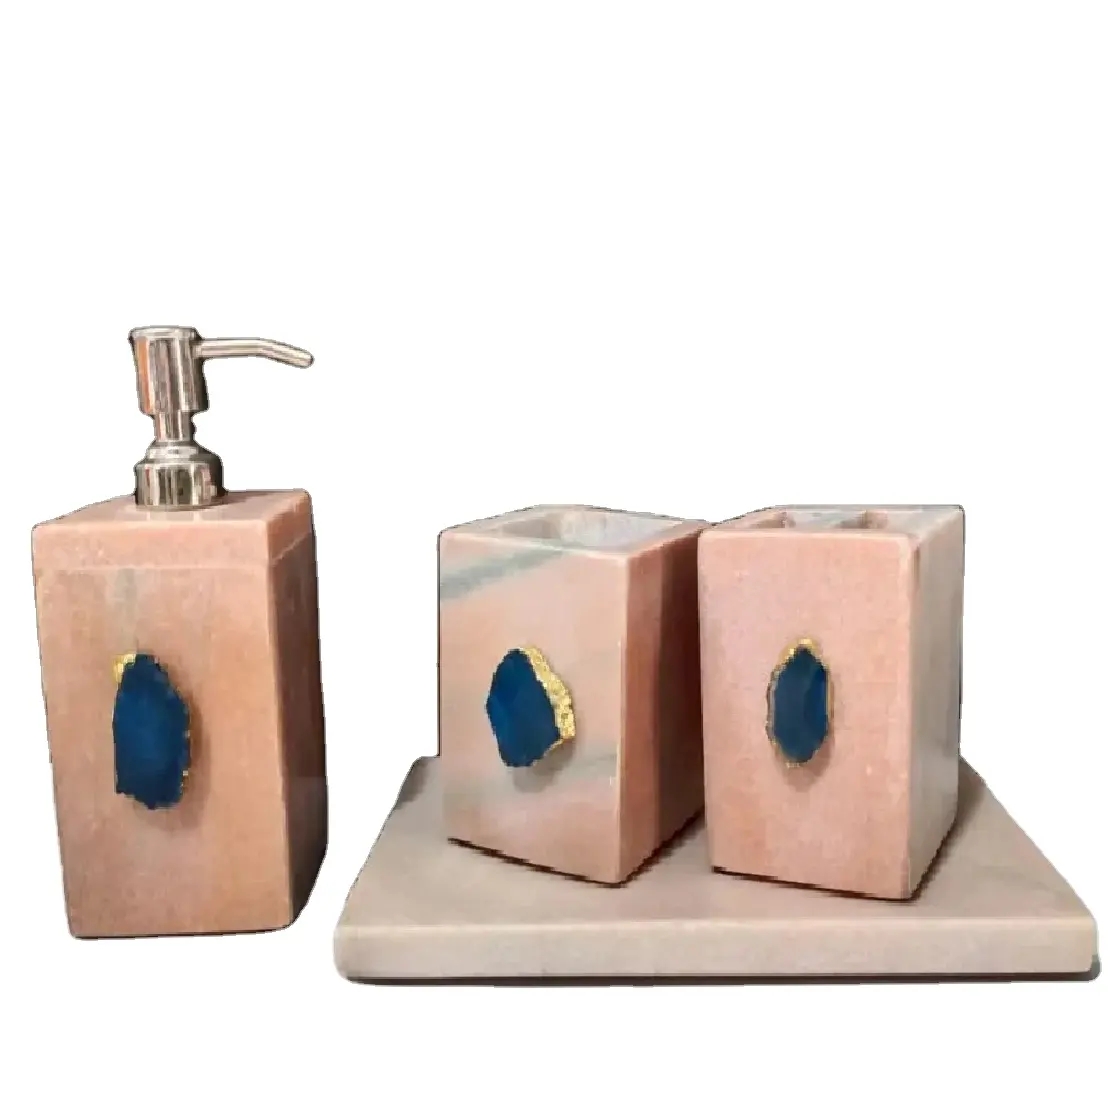 Naturmarmor-Agat-Stein-Badezubehör-Set mit 4 Teilen: Seifenspender Zahbürstenhalter-Tablett Becher-Badezimmerset